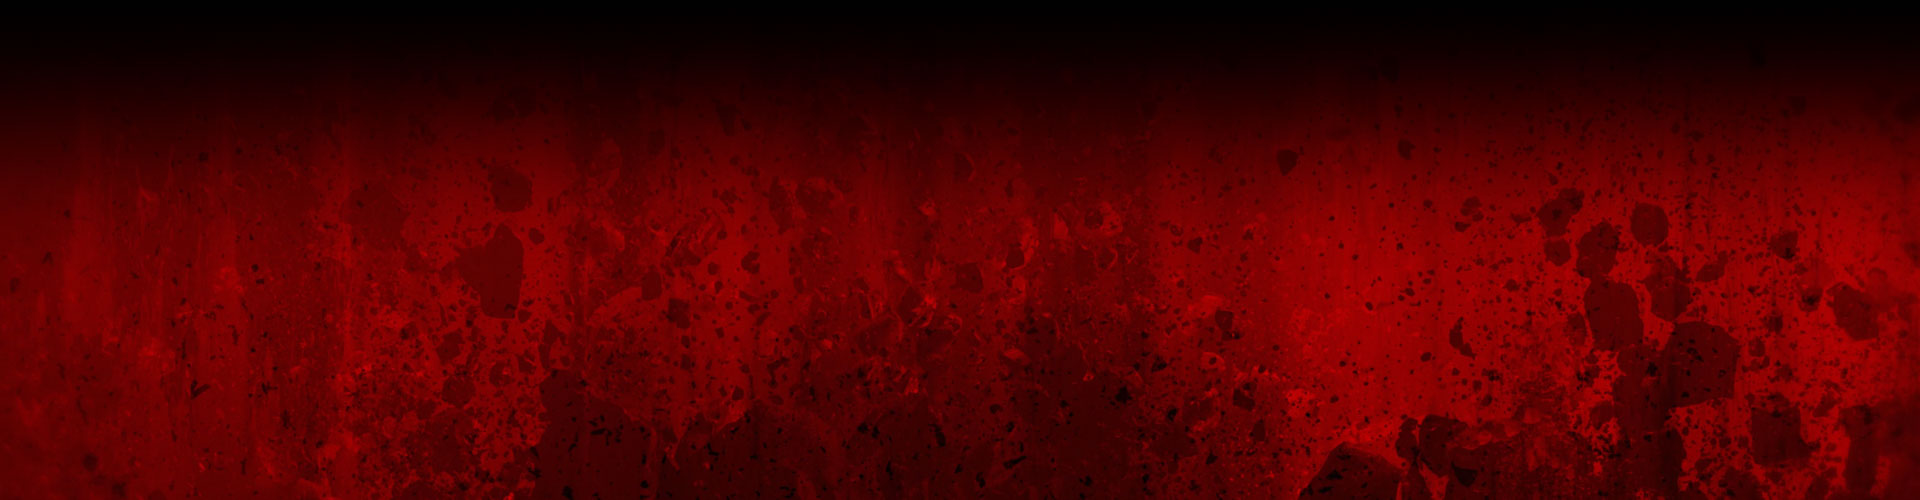 Un zid de roșu acoperit cu stropitoare întunecată și imagini ale rocilor distruse